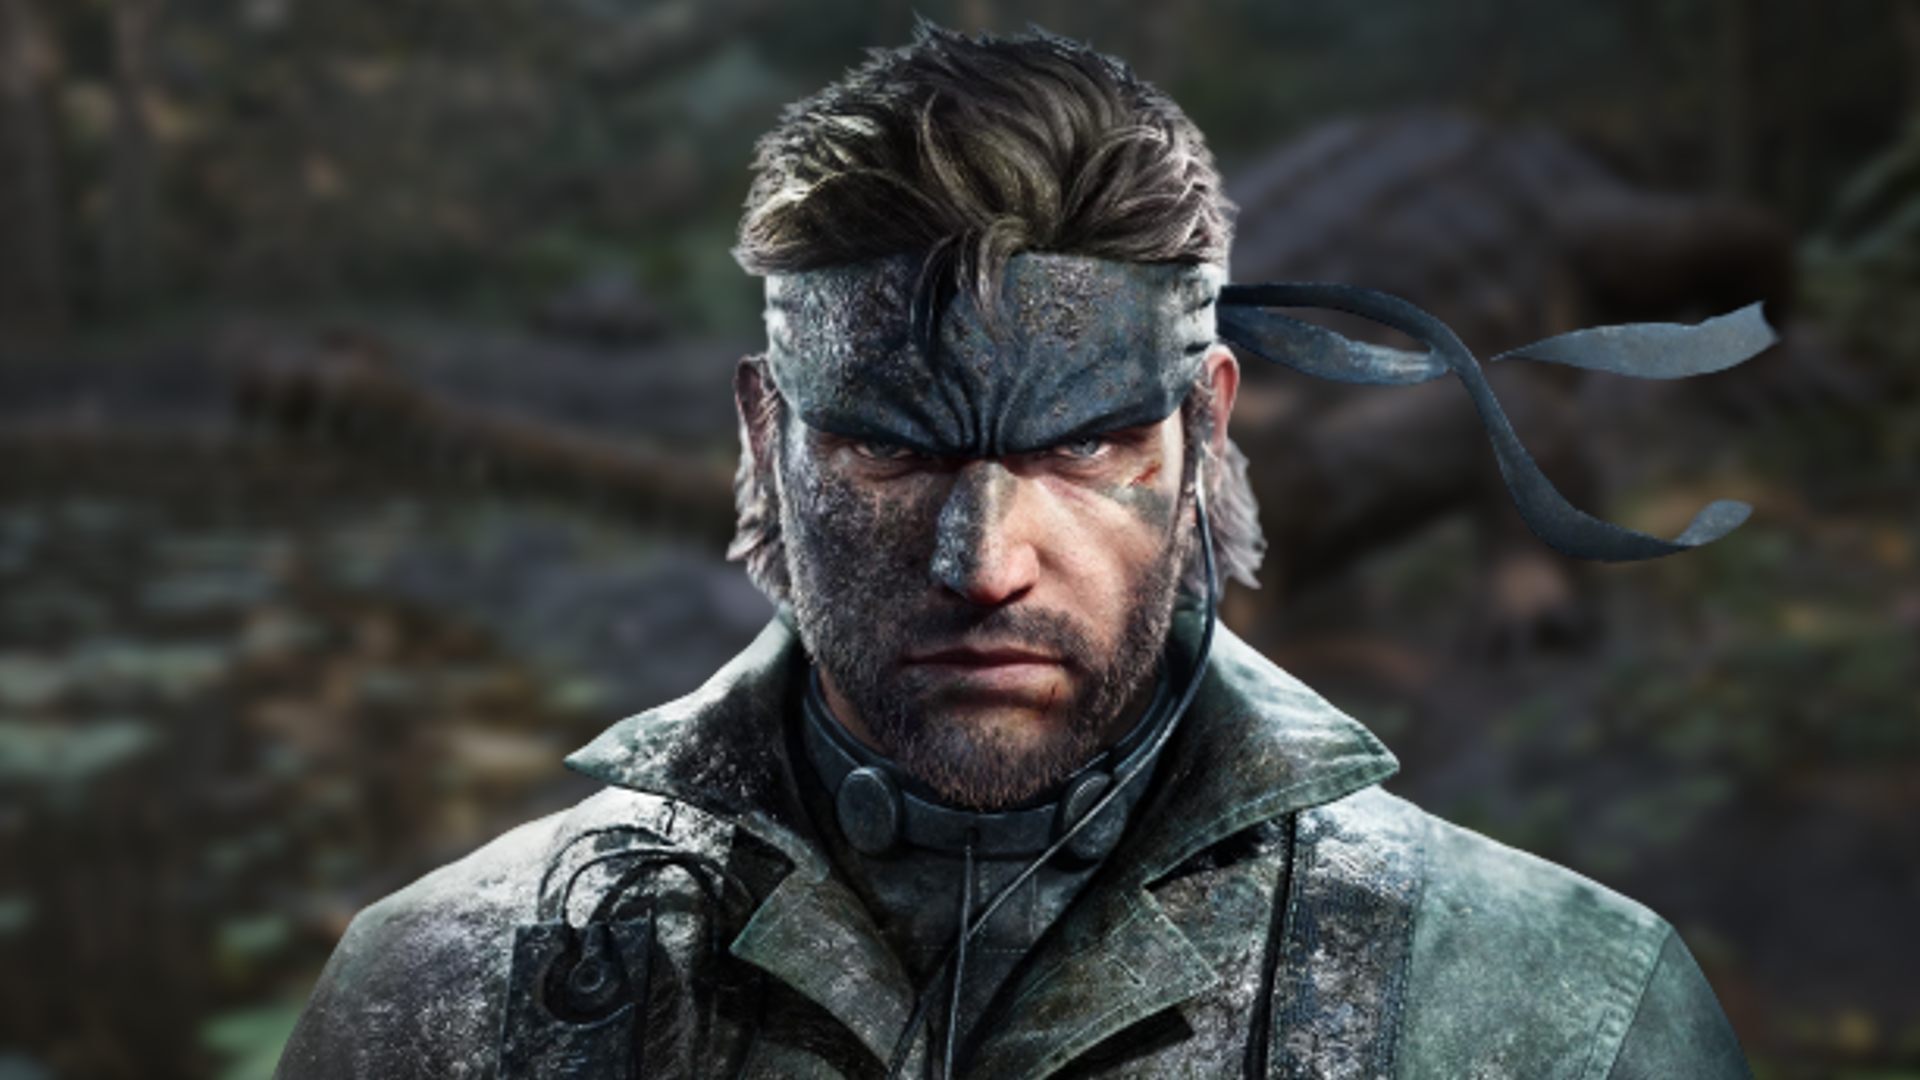 Metal Gear Solid Delta e a moda dos lindos trailers sobre nada - Canaltech